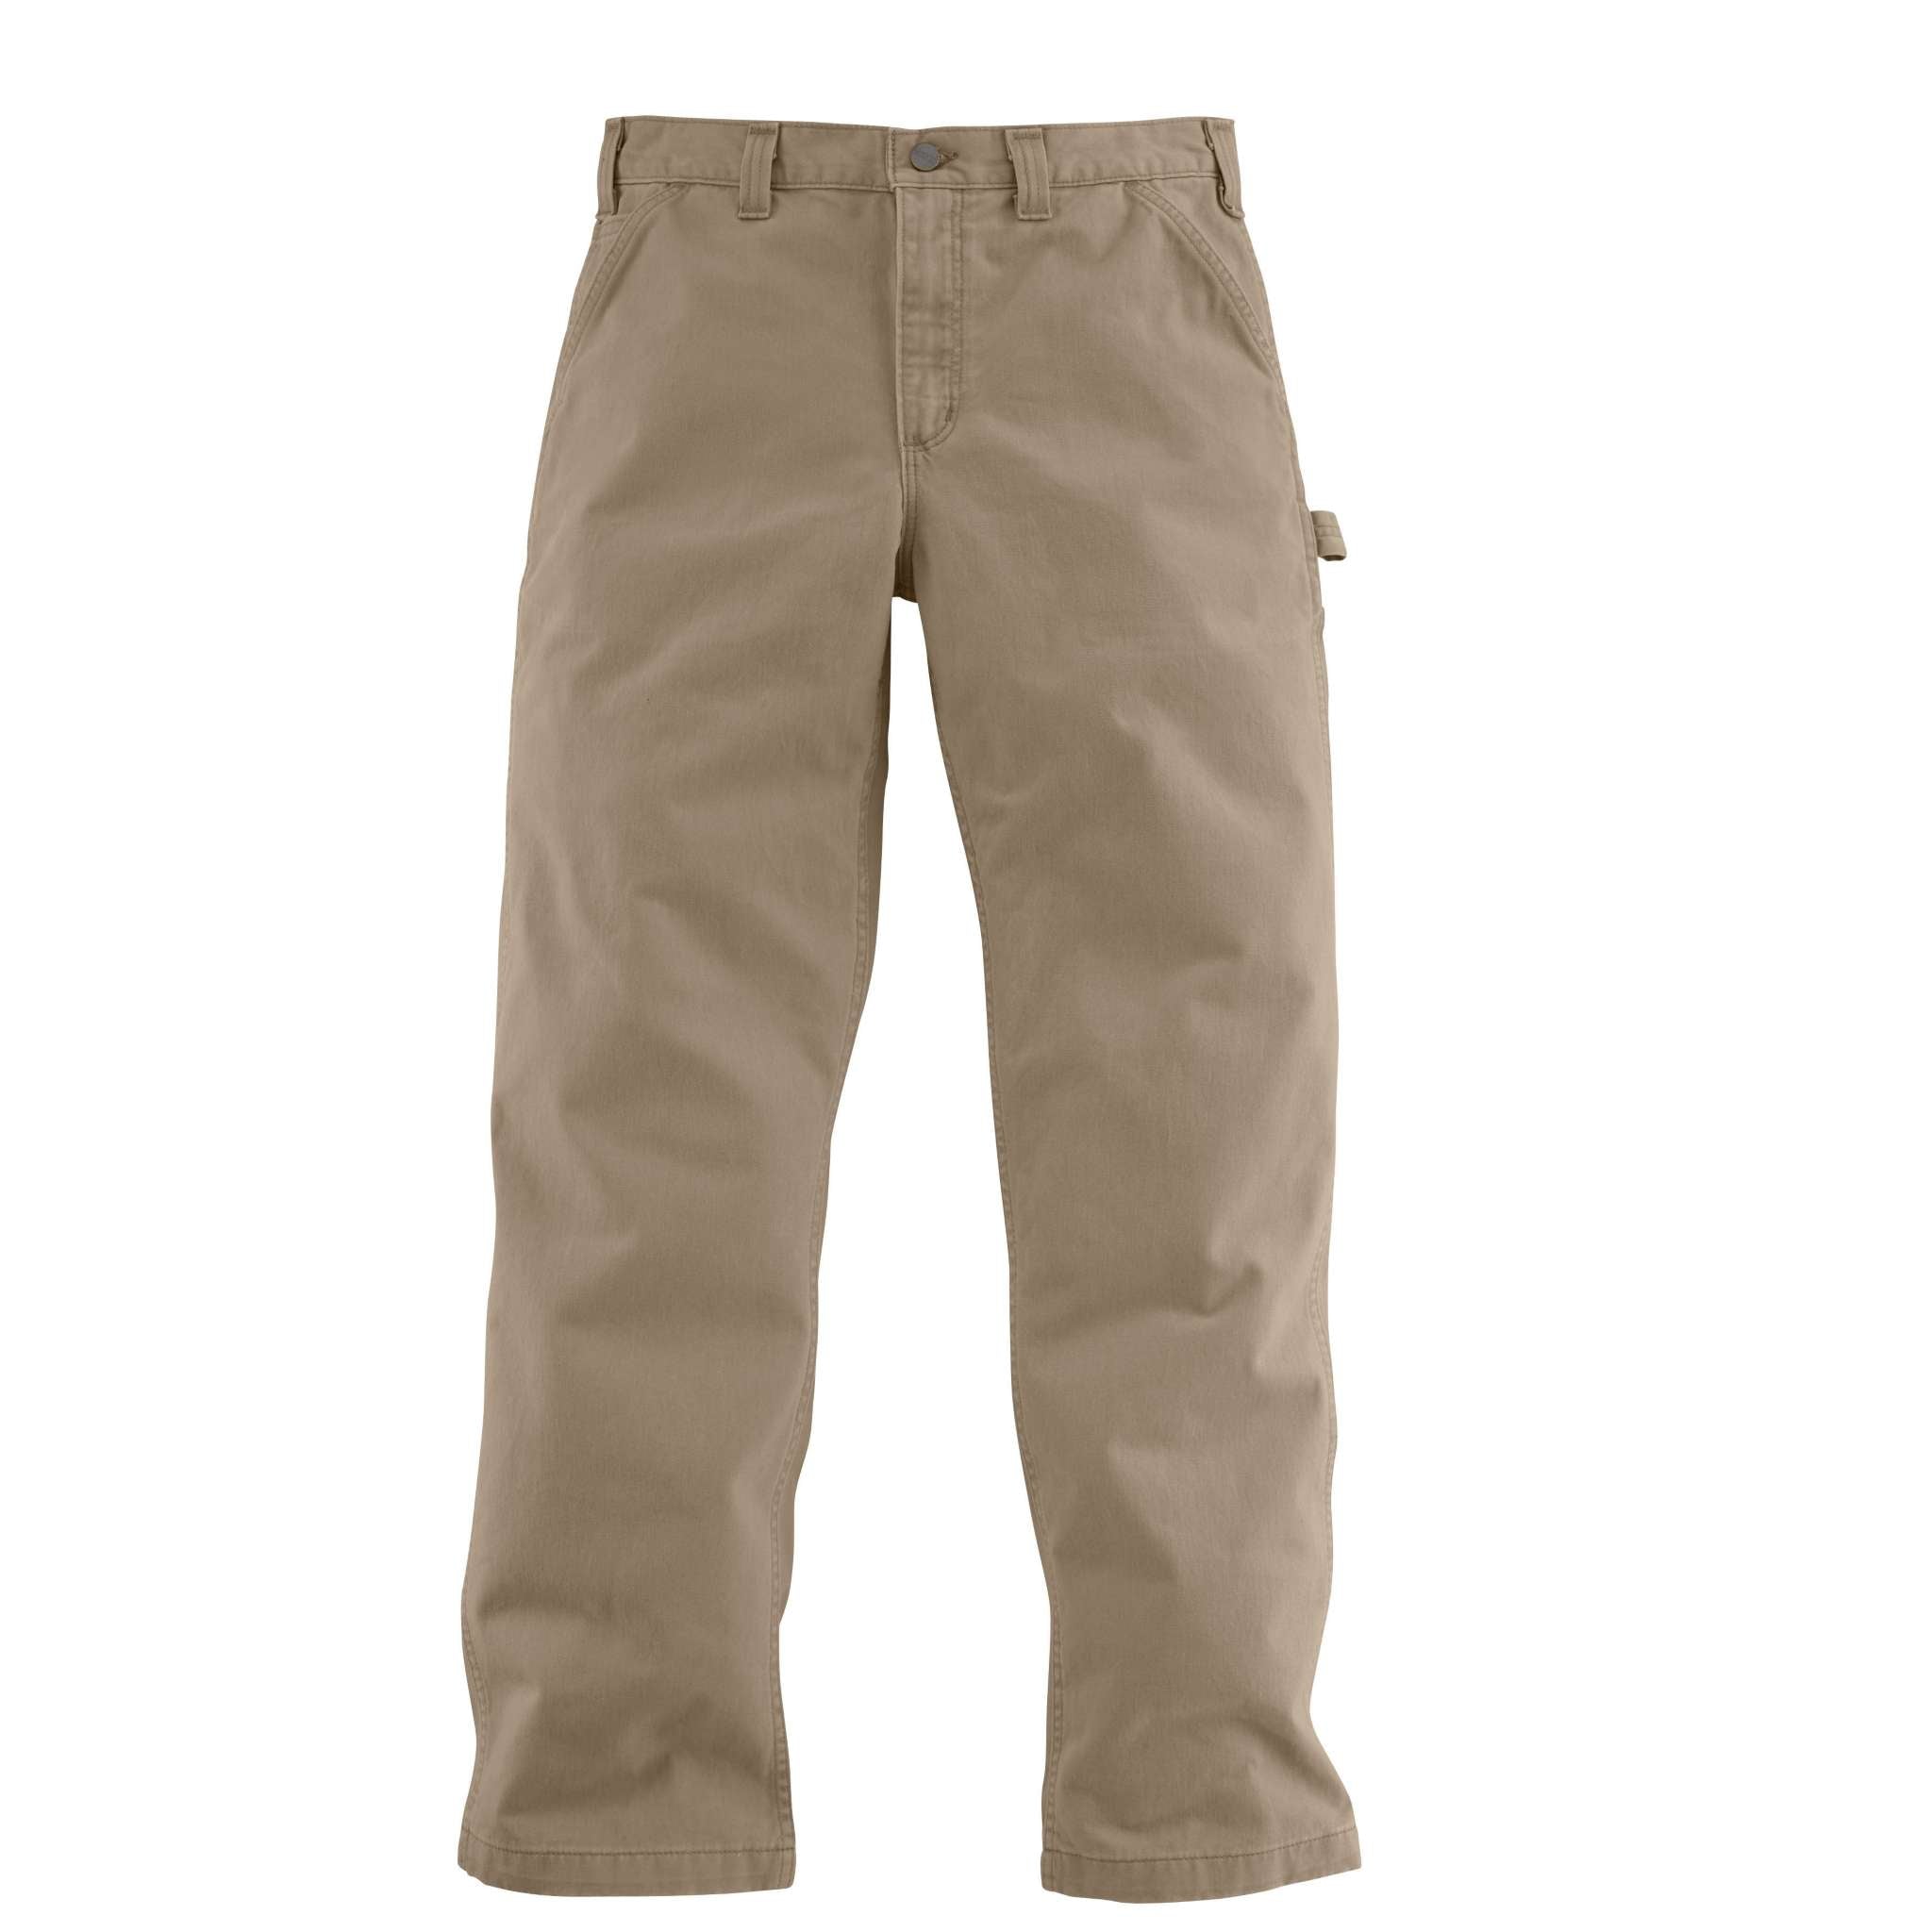 Wrangler Authentics Men's Cargo Pants Regular Fit Twill, Fleece